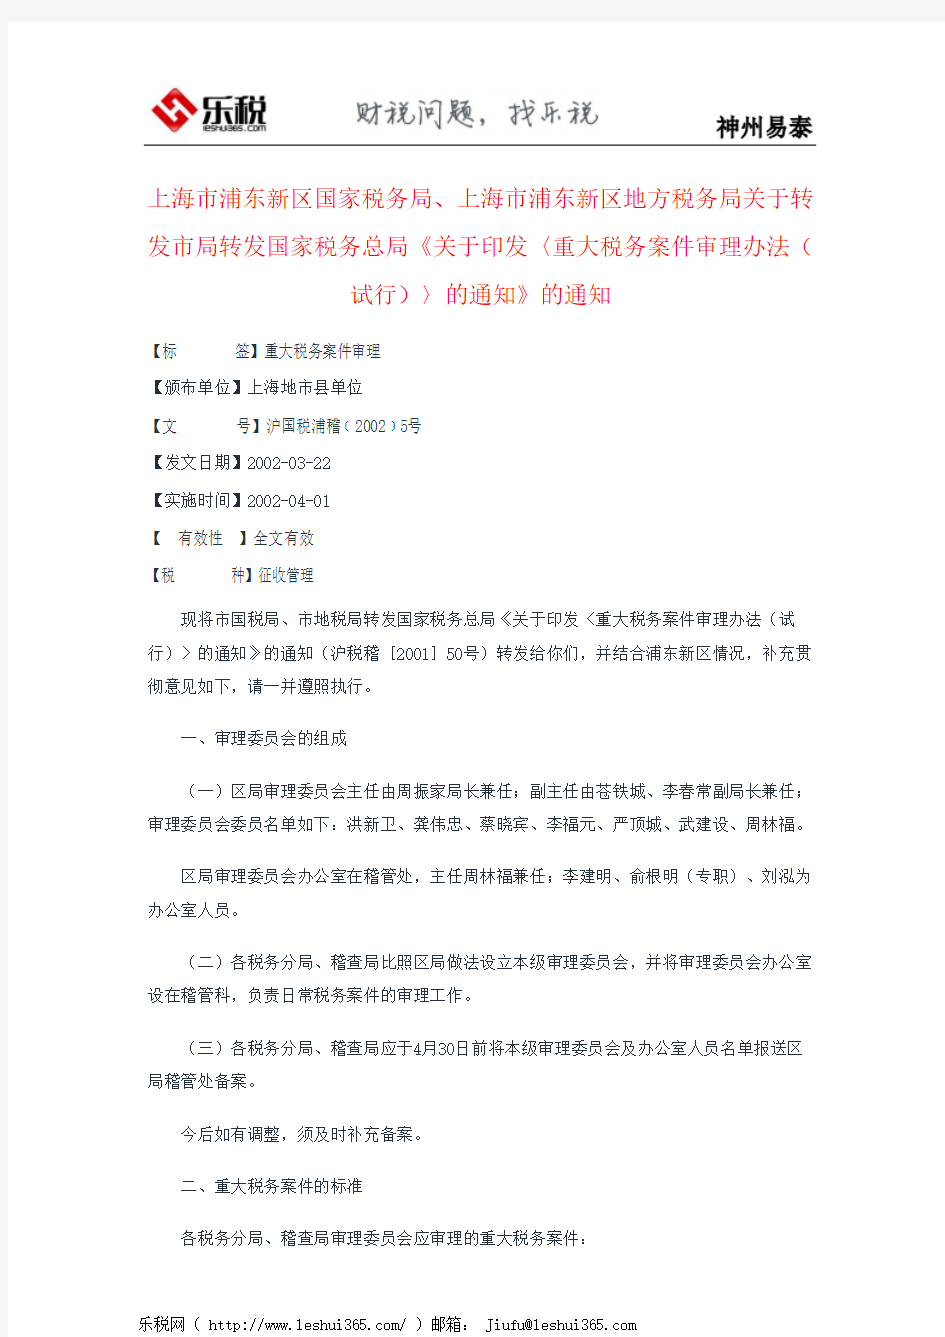 上海市浦东新区国家税务局、上海市浦东新区地方税务局关于转发市